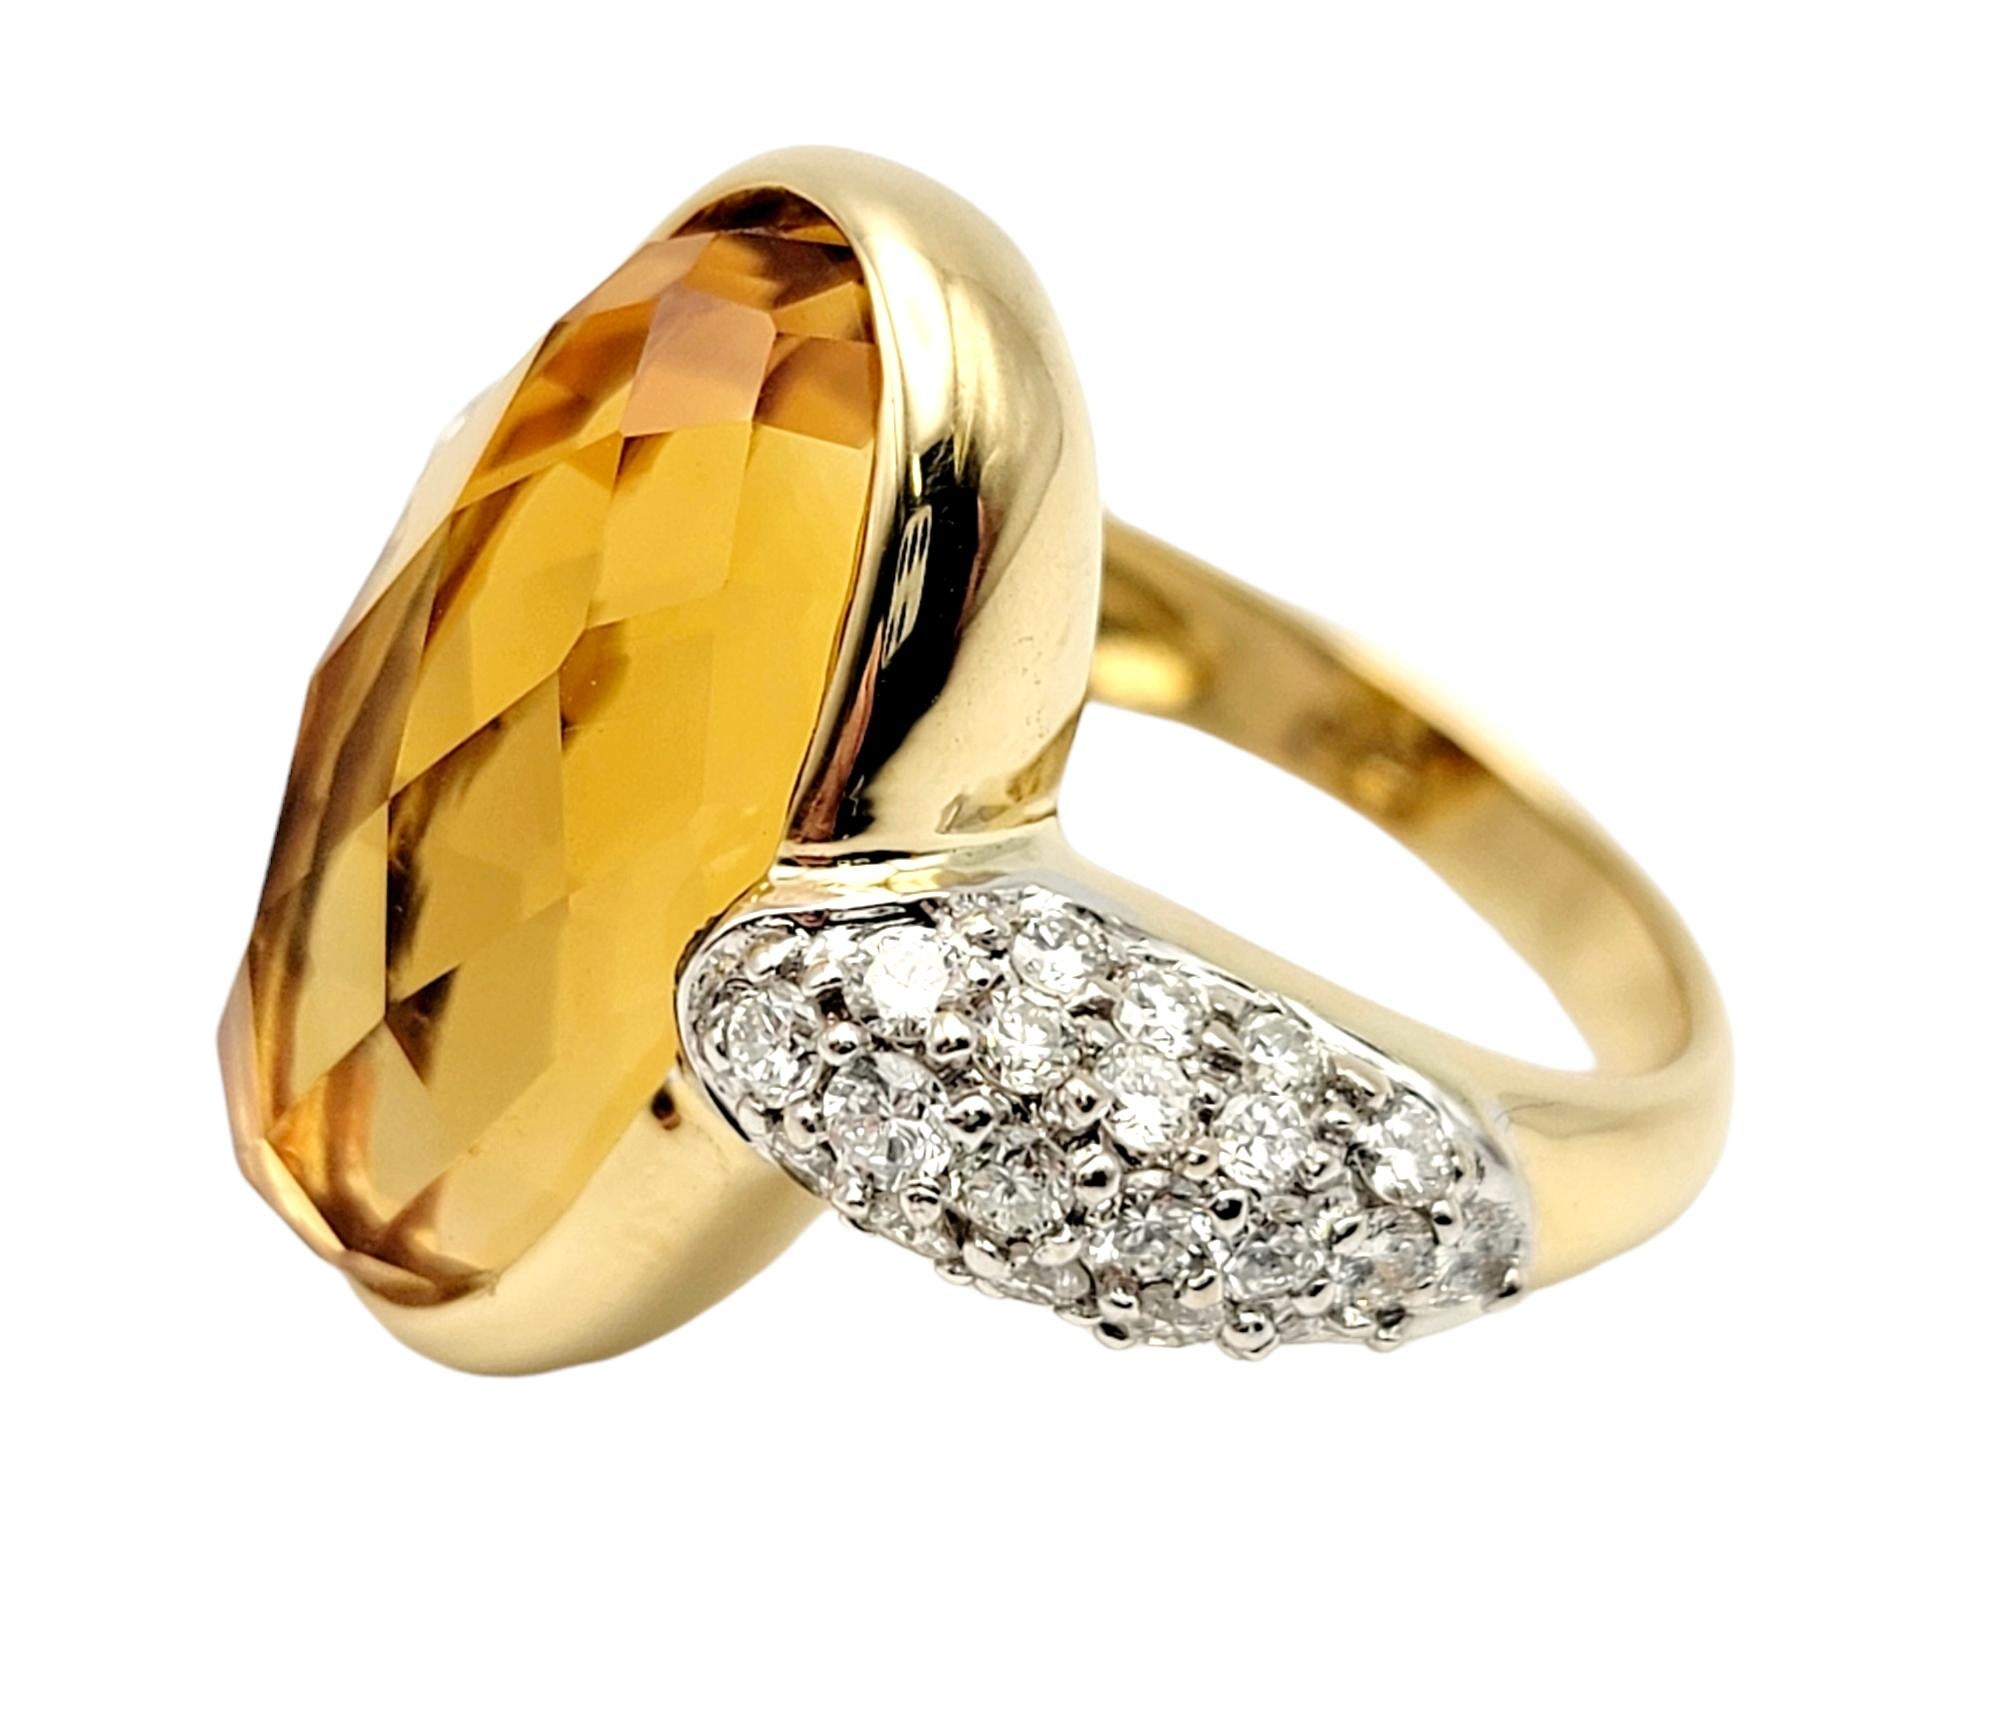 Ringgröße: 5

Der wunderschöne und einzigartige Ring aus Citrin und Diamant im Fancy-Schliff schmeichelt dem Finger und verlängert ihn, während die funkelnden Steine in der warmen Gelbgoldfassung leuchten.  

Ringgröße: 5
Metall: 18 Karat